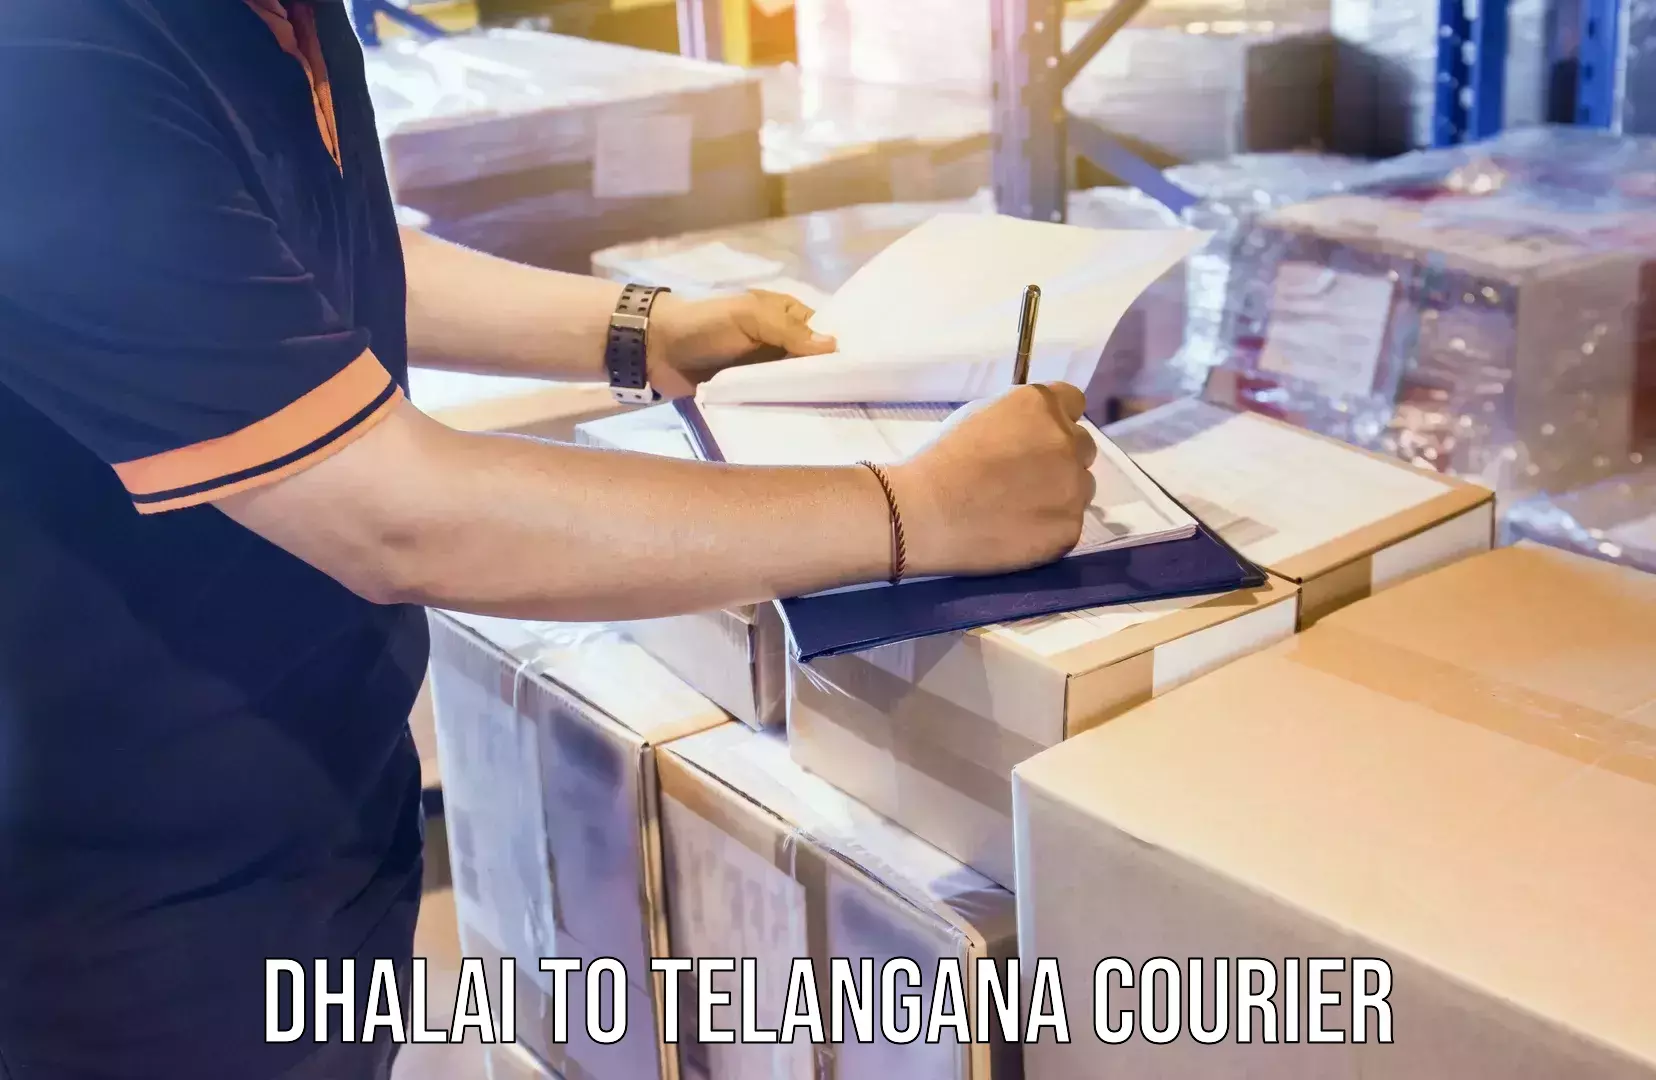 Tech-enabled shipping Dhalai to Telangana